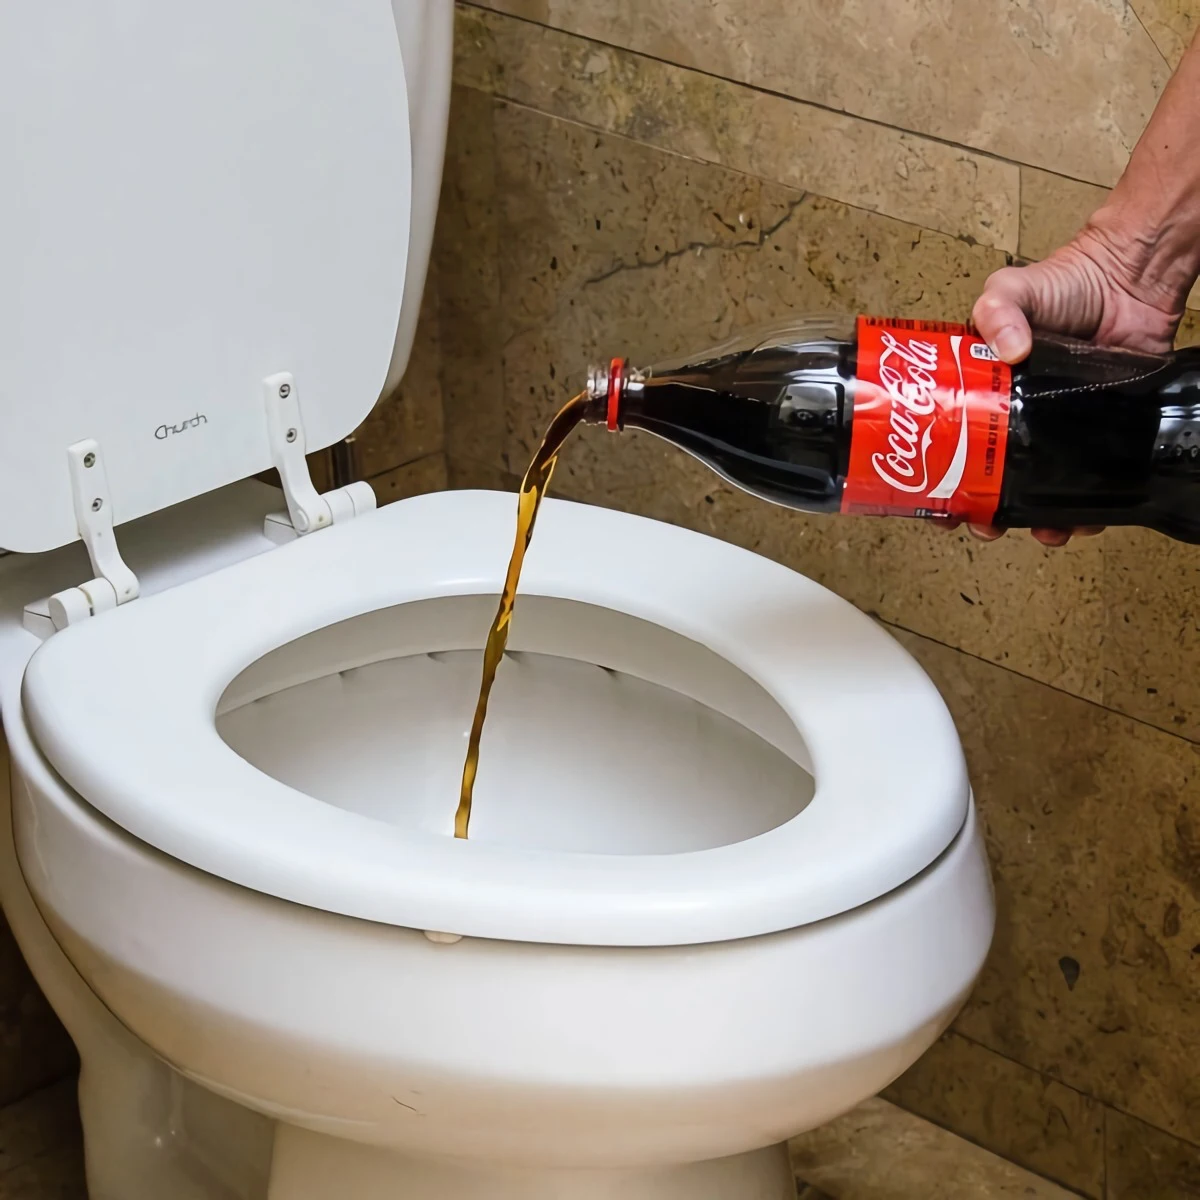 comment blanchir le fond des toilettes boisson sucre coca cola